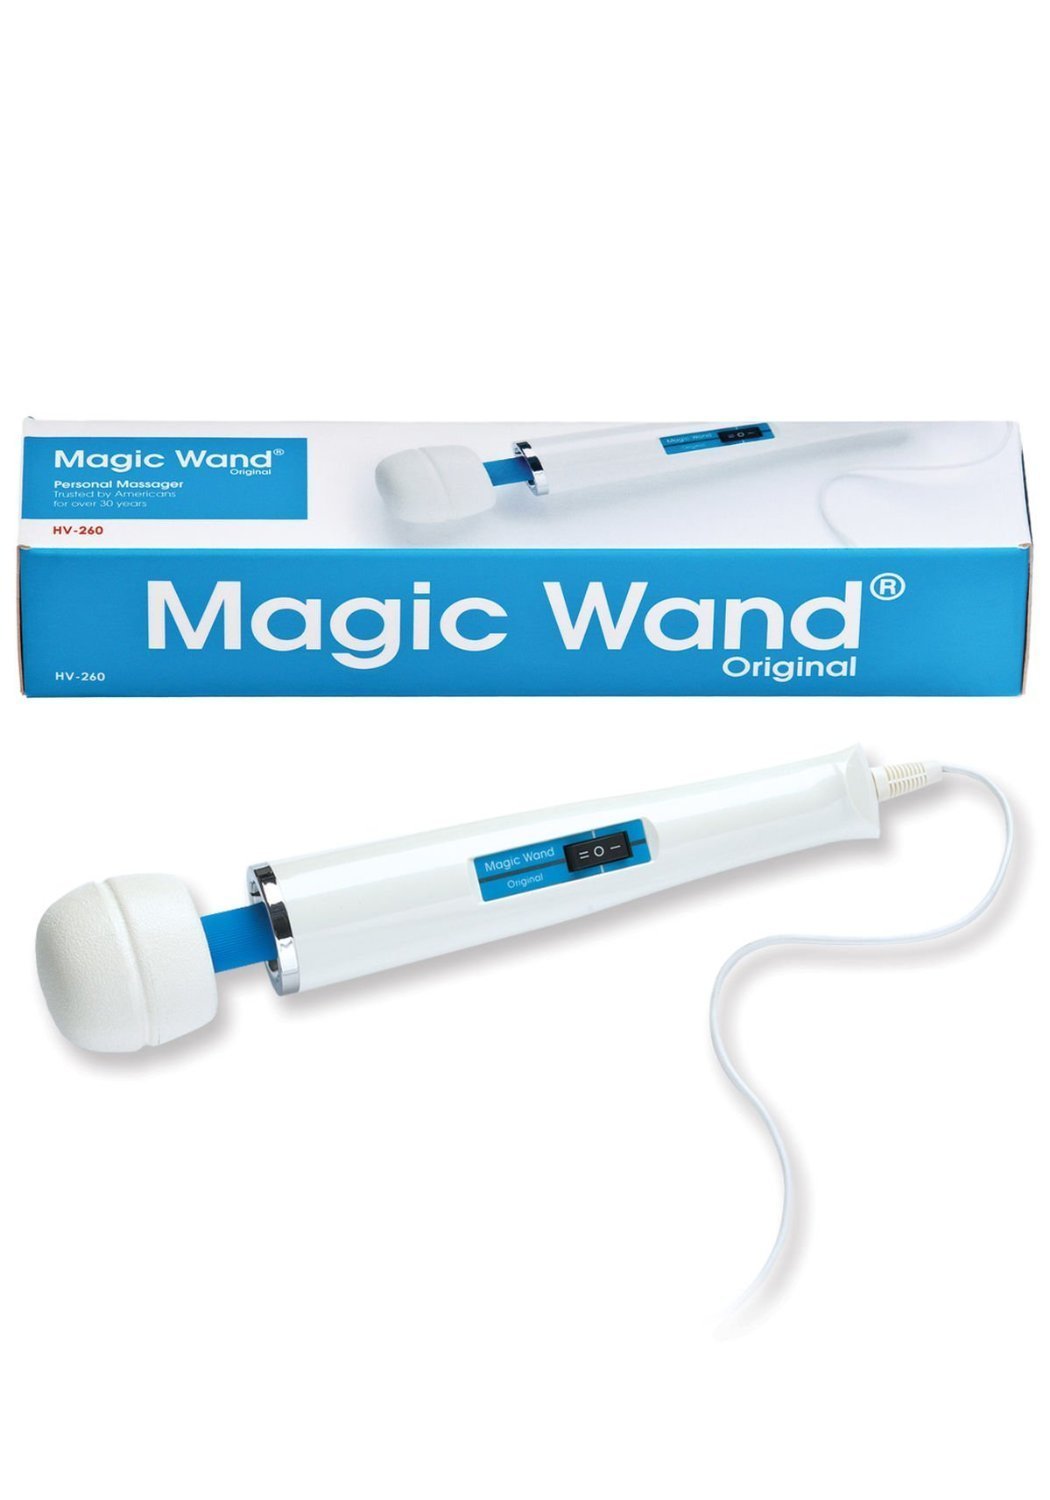 Magic wand vibrator wife